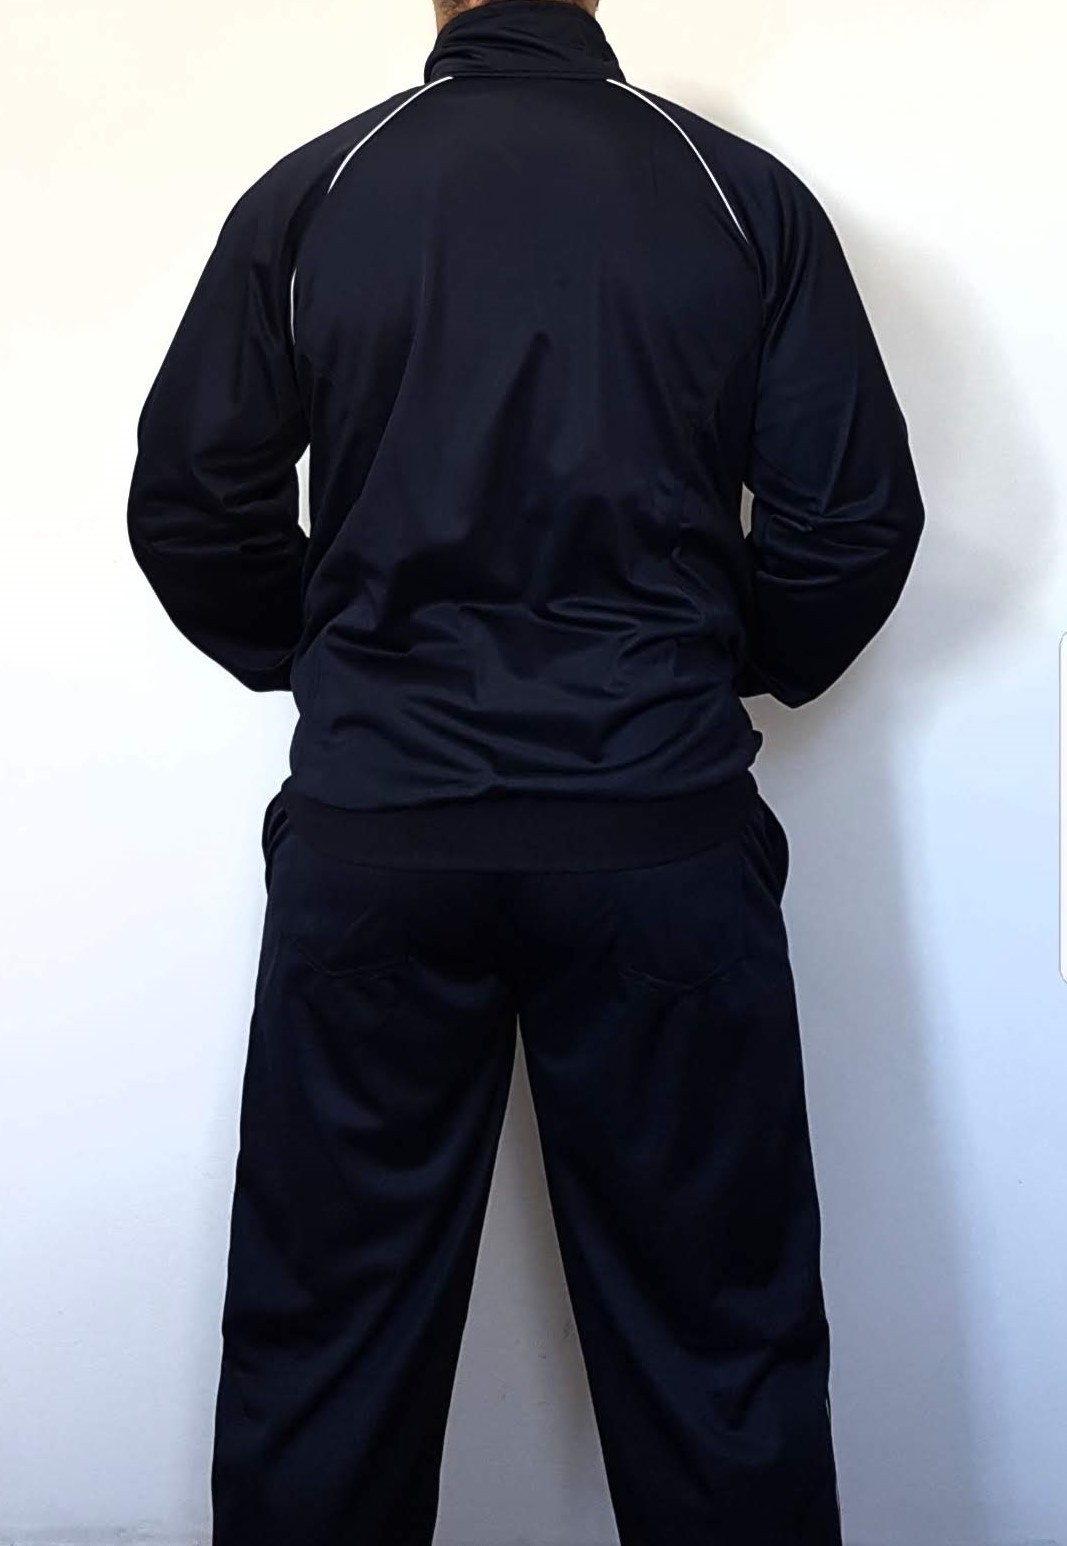 Agasalho Hapkido Korea Martial Arts Shodo Cores: Preto ou Azul escuro